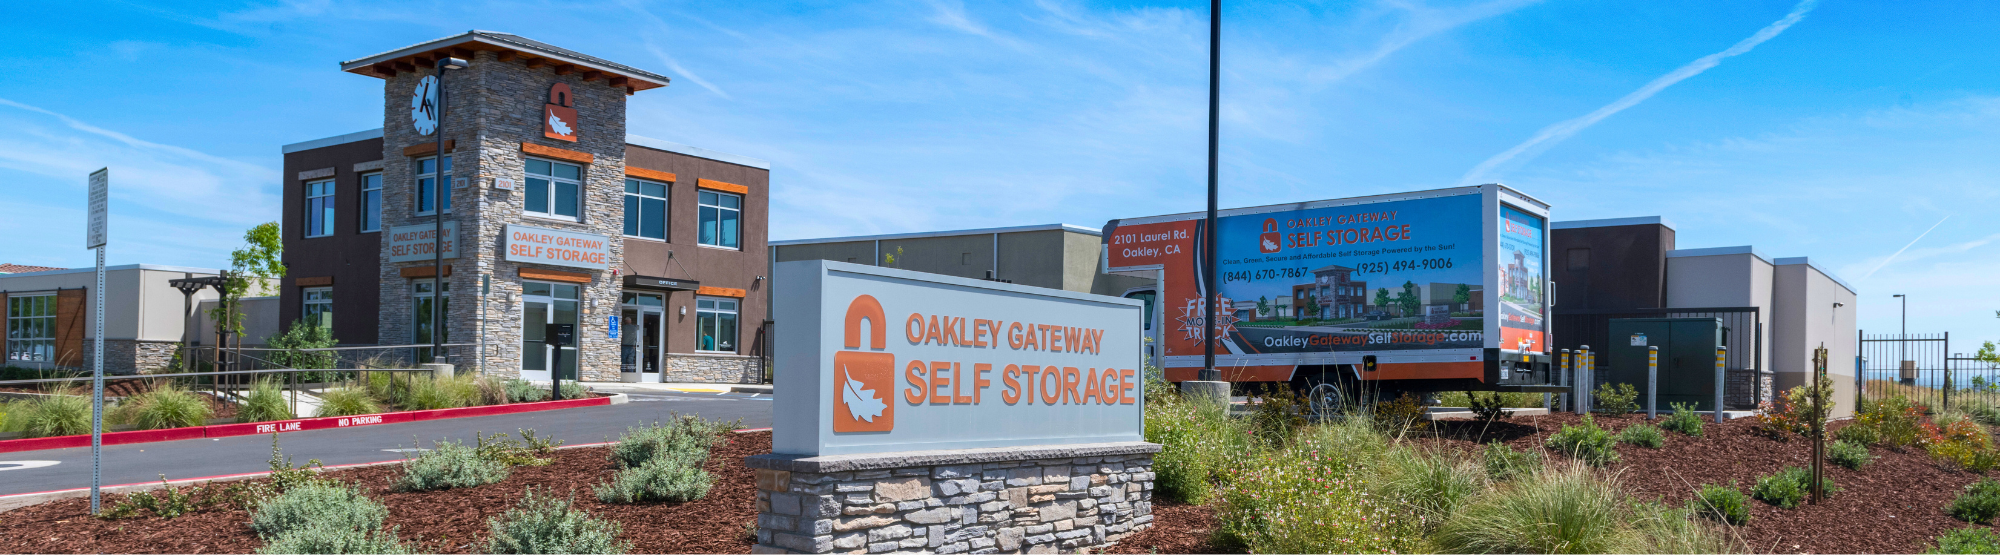 Oakley Gateway Self Storage in Oakley, CA 94561